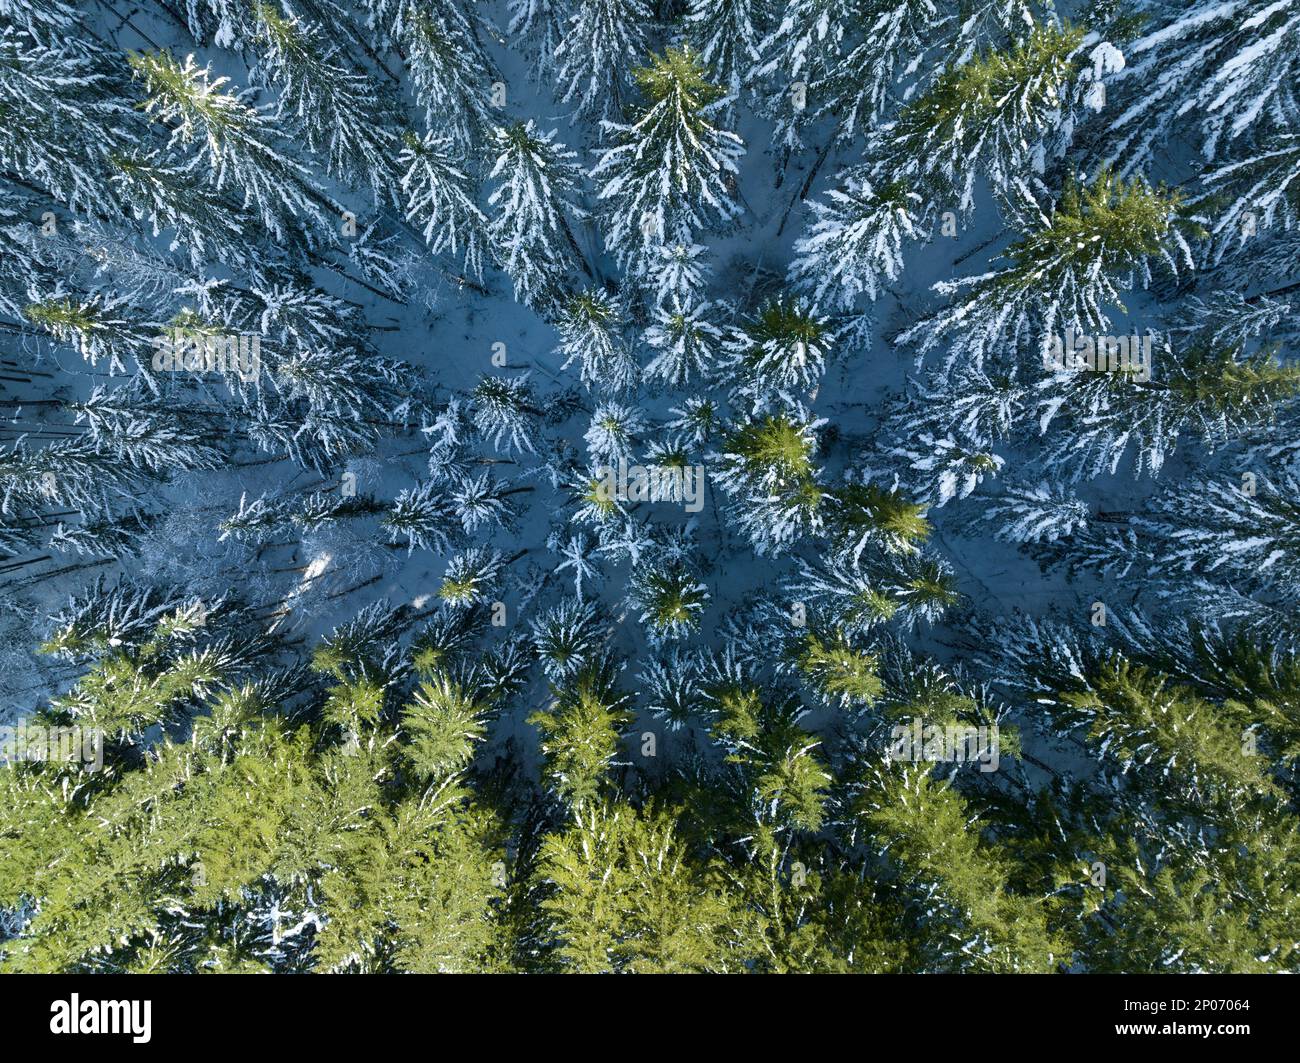 La neve copre una foresta di abeti Douglas in Oregon. Questa parte del Pacifico nord-occidentale è conosciuta per le sue vaste risorse naturali, in particolare le foreste. Foto Stock